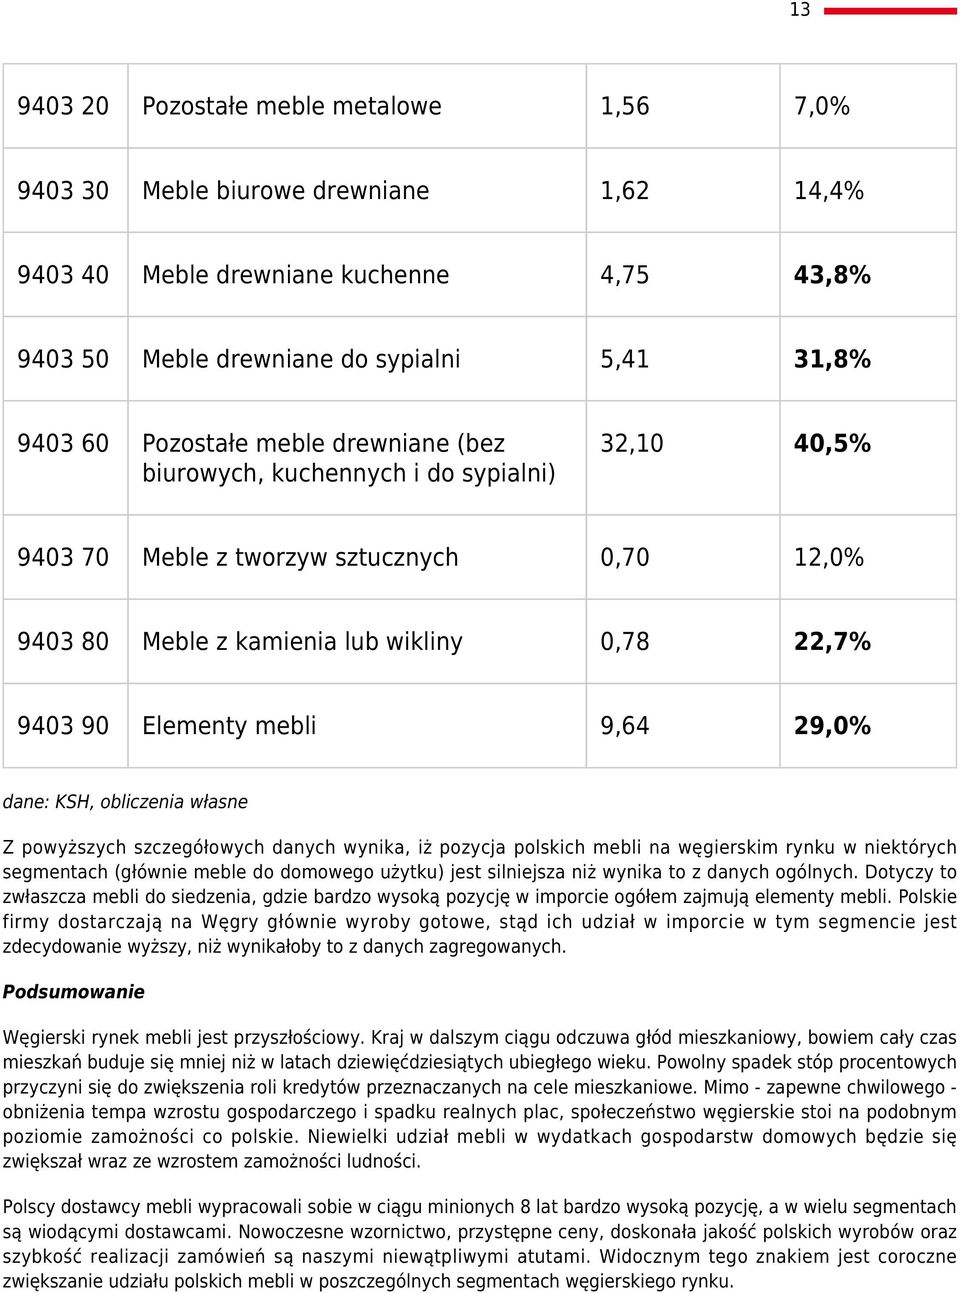 dane: KSH, obliczenia własne Z powyższych szczegółowych danych wynika, iż pozycja polskich mebli na węgierskim rynku w niektórych segmentach (głównie meble do domowego użytku) jest silniejsza niż